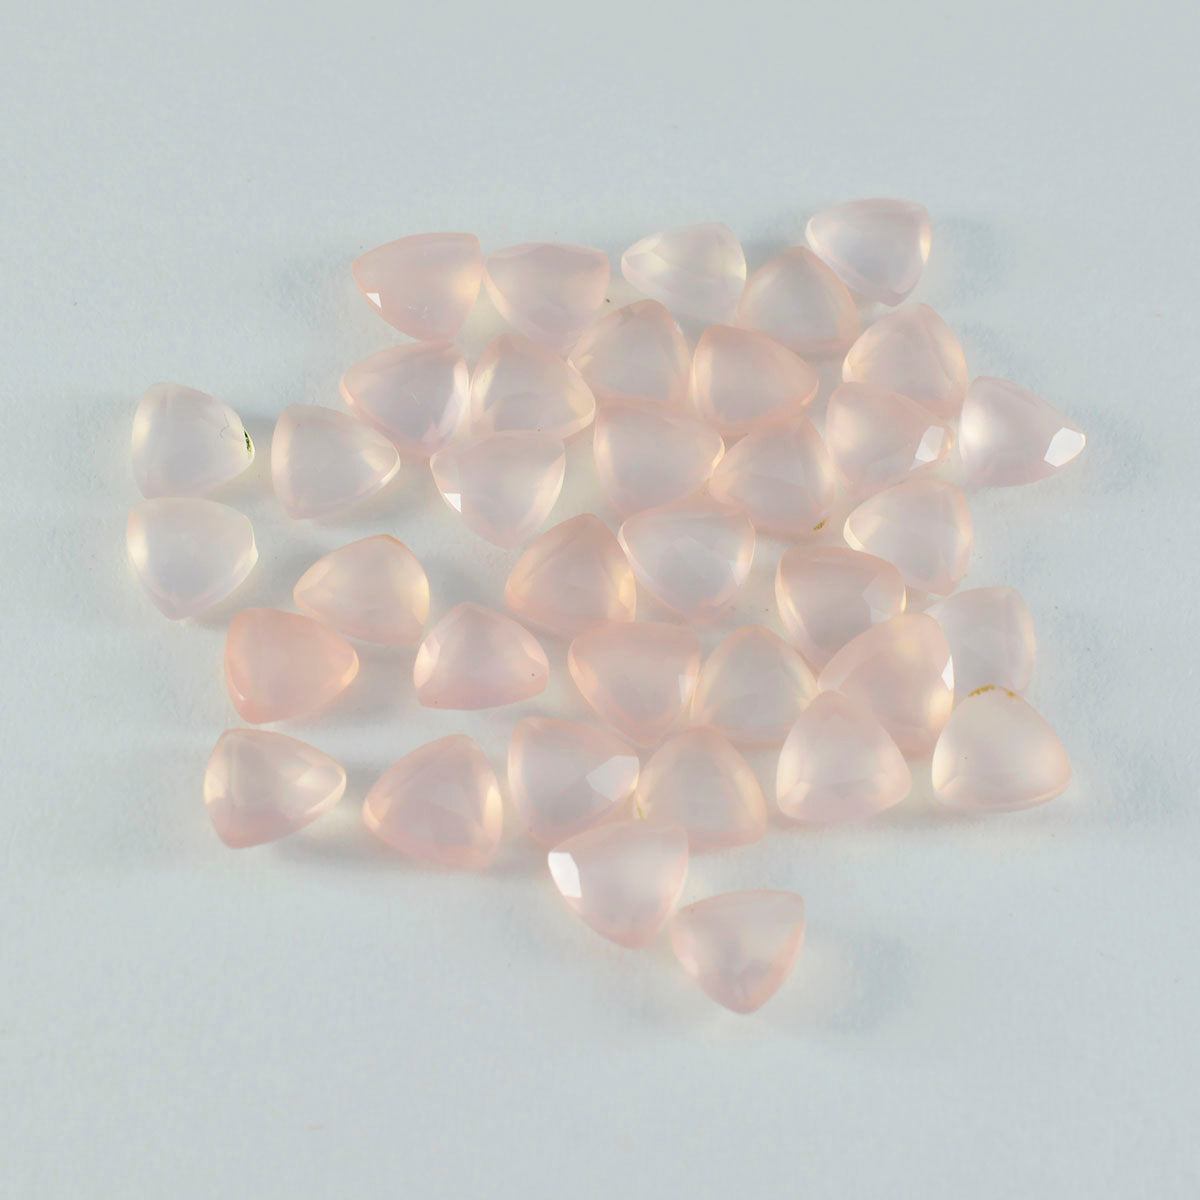 riyogems 1шт розовый кварц ограненный 7x7 мм форма триллиона качество aa россыпь драгоценные камни